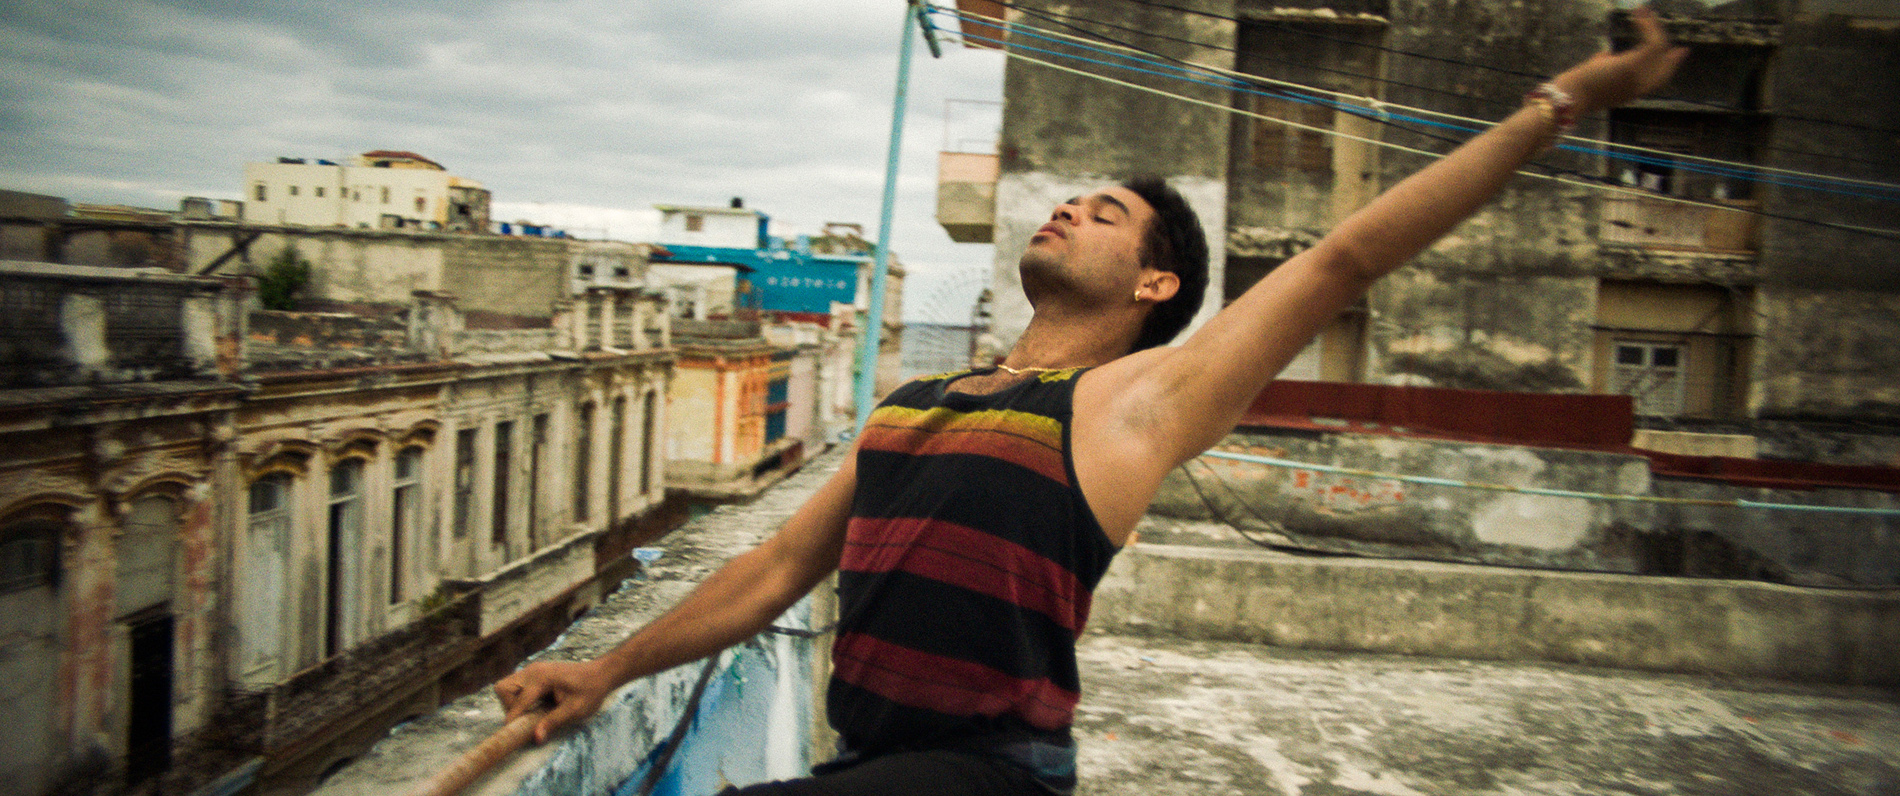 Sin la Habana - Chemin de vie et ascension sociale